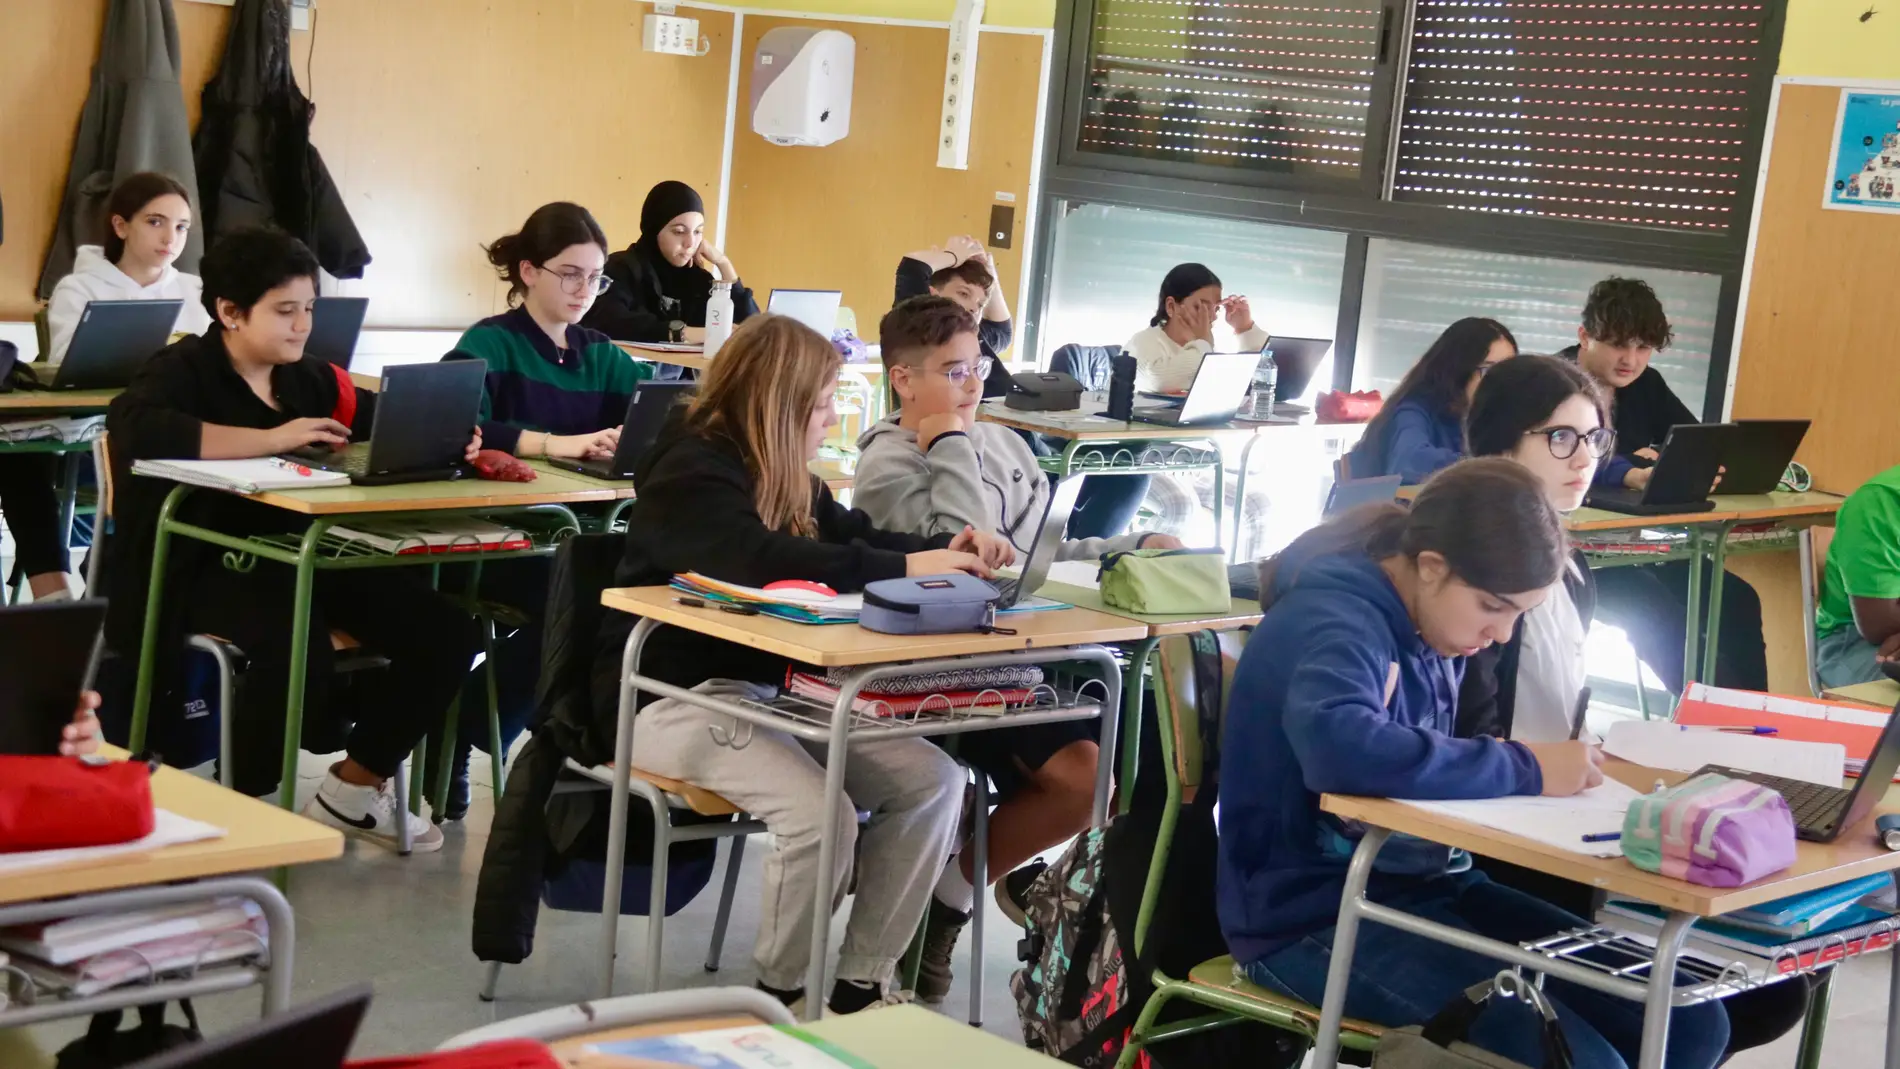 El nivell acadèmic dels alumnes catalans, per sota de la mitjana espanyola